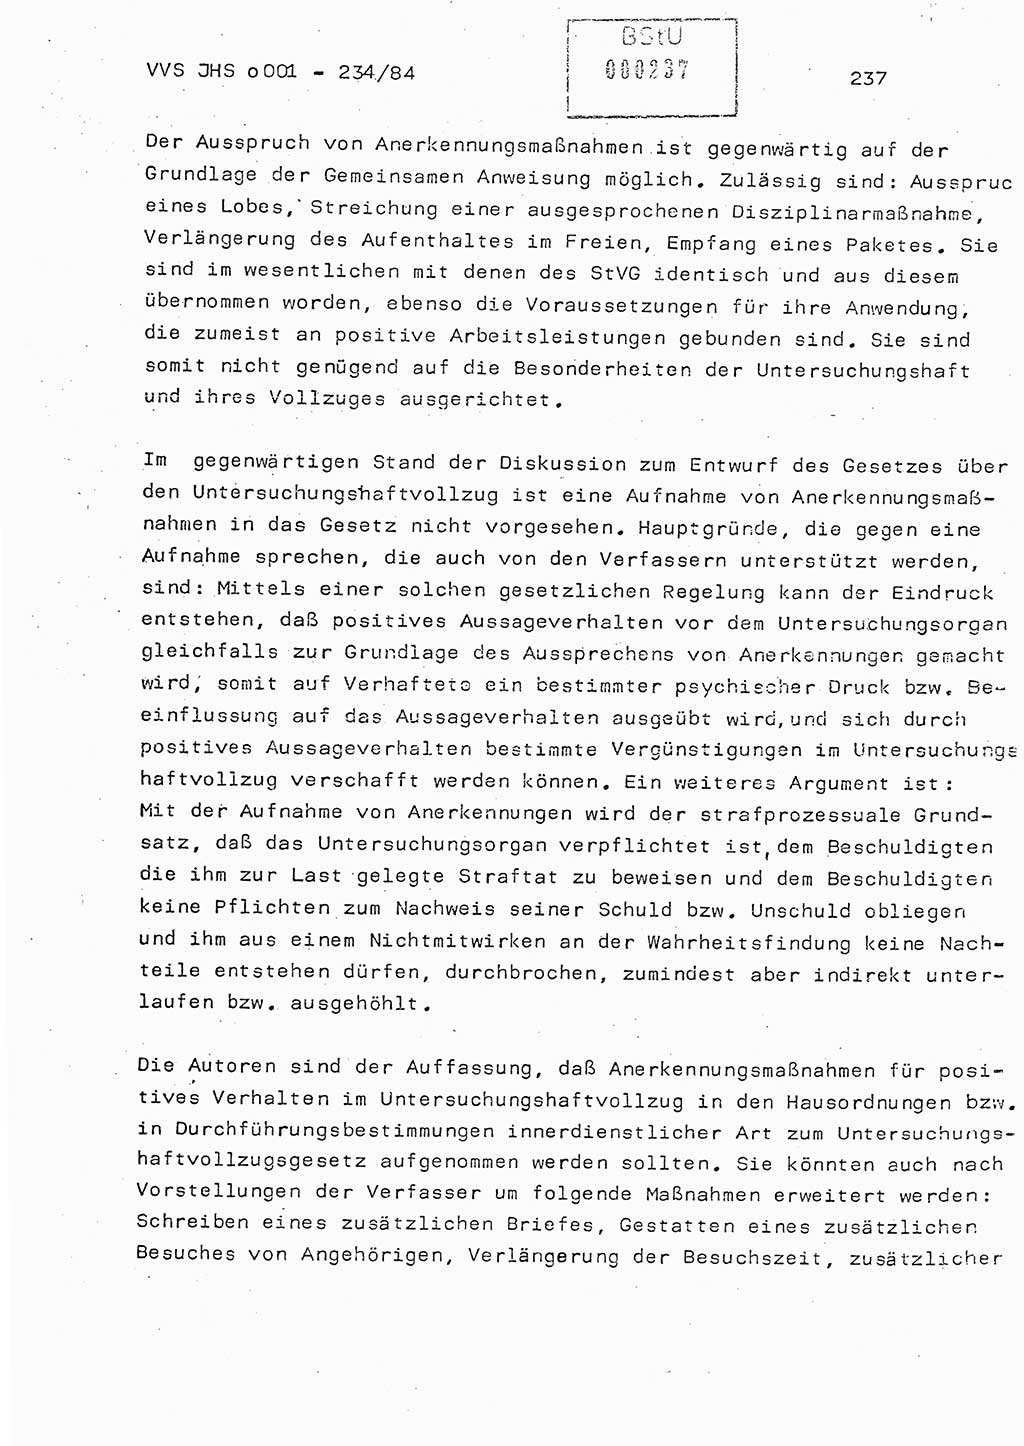 Dissertation Oberst Siegfried Rataizick (Abt. ⅩⅣ), Oberstleutnant Volkmar Heinz (Abt. ⅩⅣ), Oberstleutnant Werner Stein (HA Ⅸ), Hauptmann Heinz Conrad (JHS), Ministerium für Staatssicherheit (MfS) [Deutsche Demokratische Republik (DDR)], Juristische Hochschule (JHS), Vertrauliche Verschlußsache (VVS) o001-234/84, Potsdam 1984, Seite 237 (Diss. MfS DDR JHS VVS o001-234/84 1984, S. 237)